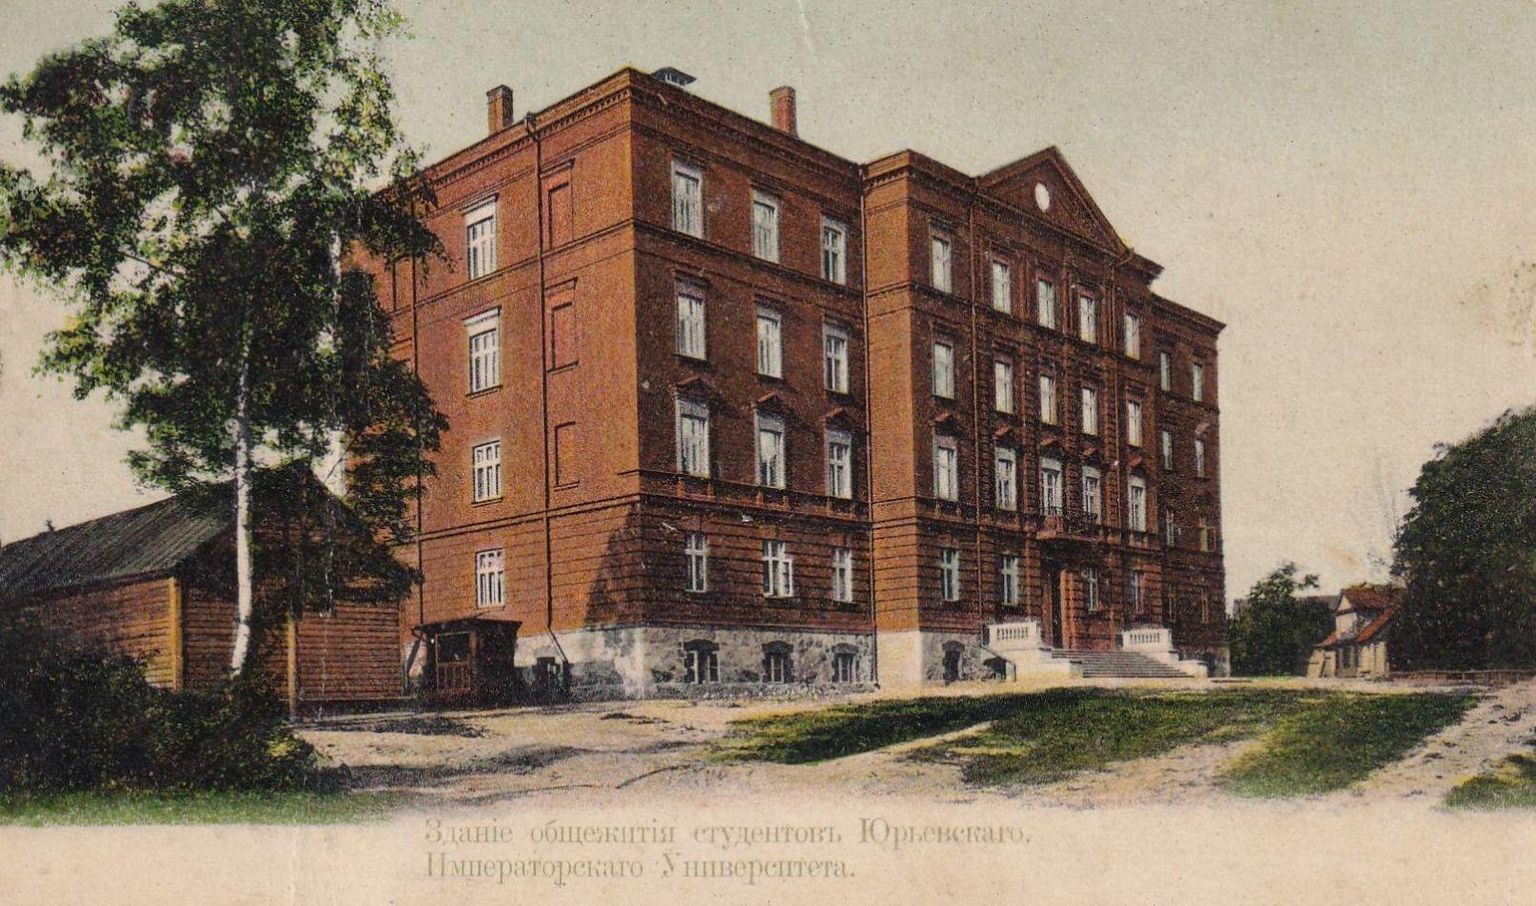 Aastatel 1902–1904 arhitekt Reinhold Guleke projekti järgi Toomemäele ehitatud Tartu Ülikooli esimesest ühiselamust sai alates 16. maist 1921 meie kirjaliku mälu tähtsaim hoiupaik – Eesti Riigi Keskarhiiv. Arhiiv töötas selles majas 95 aastat.